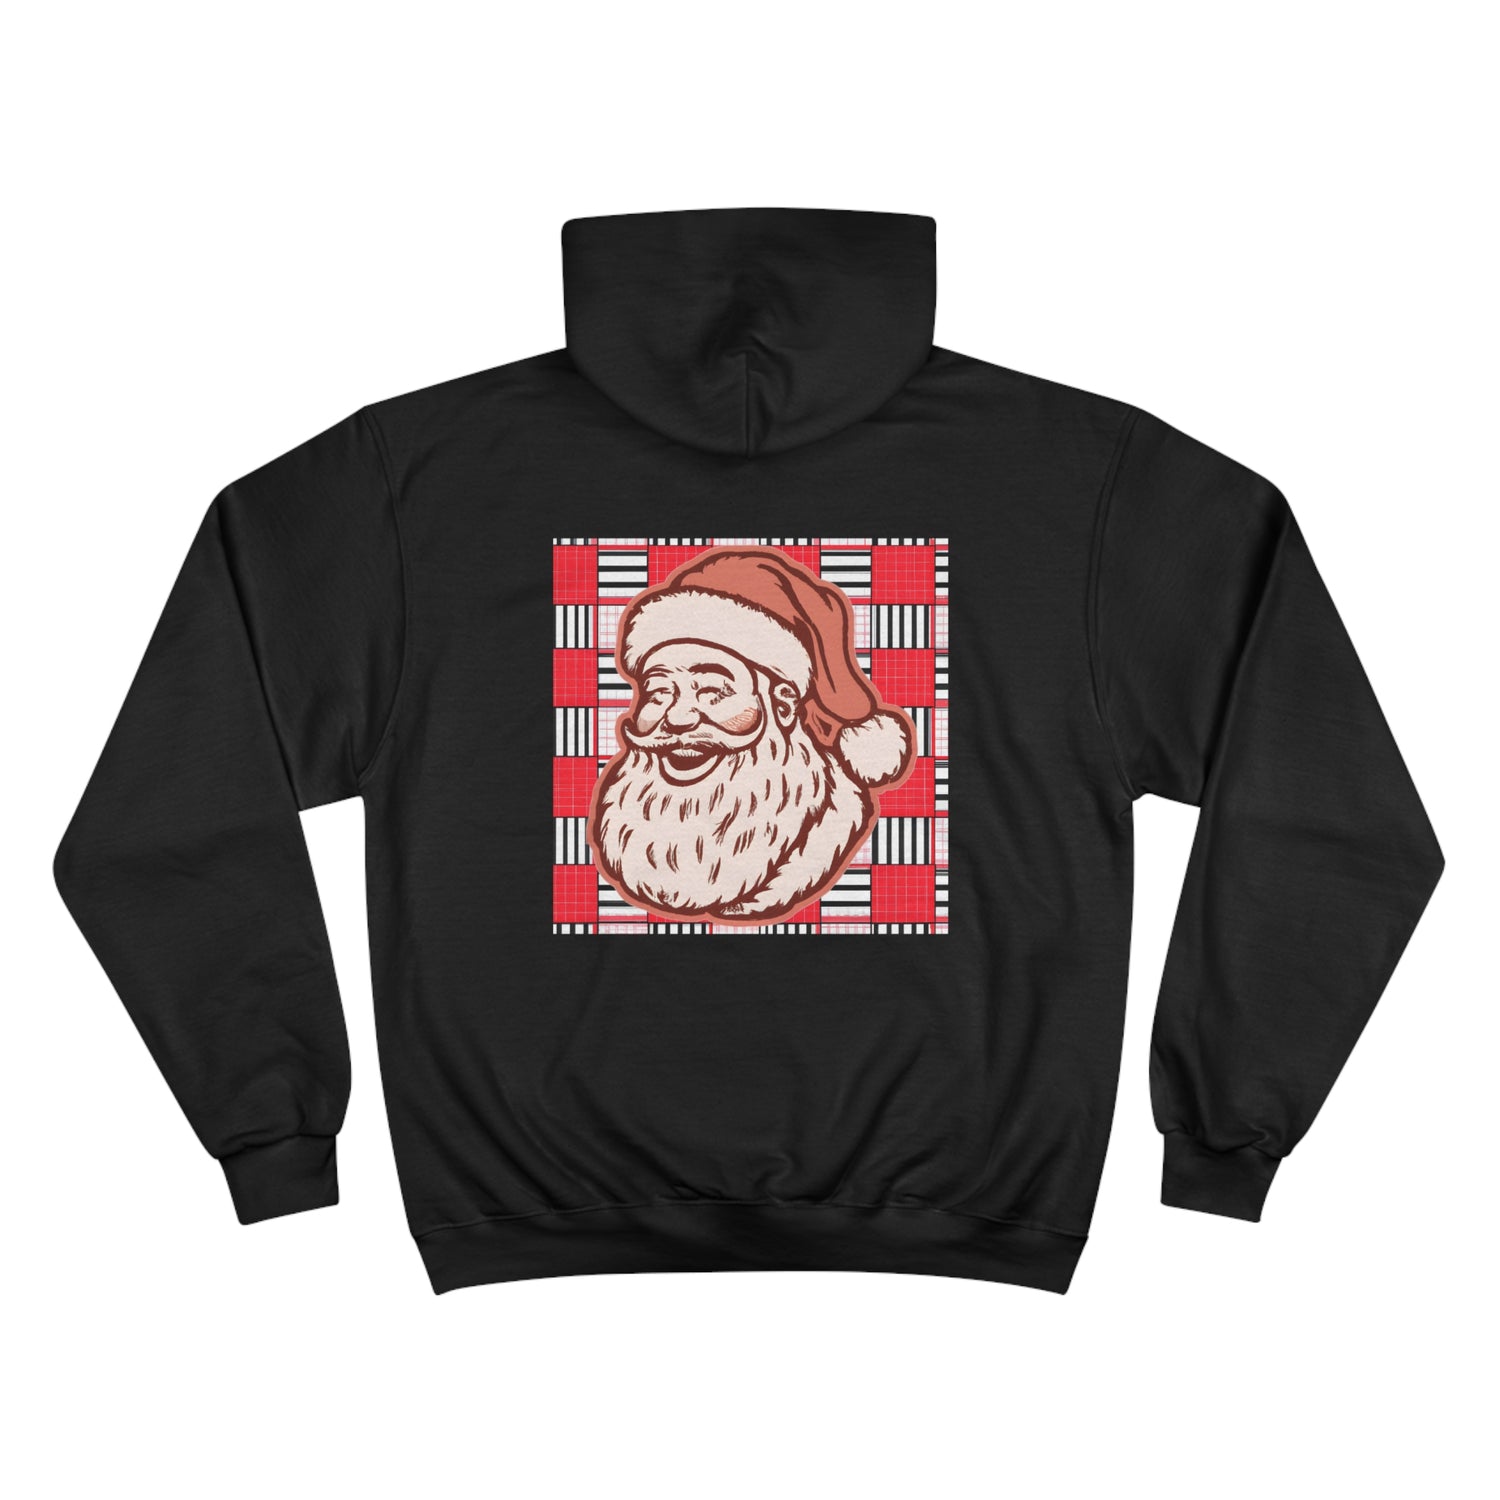 Designer Black Art Hoodie -Vintage Santa - Alacrity Prints' Festive Christmas Hooded Sweathshirt